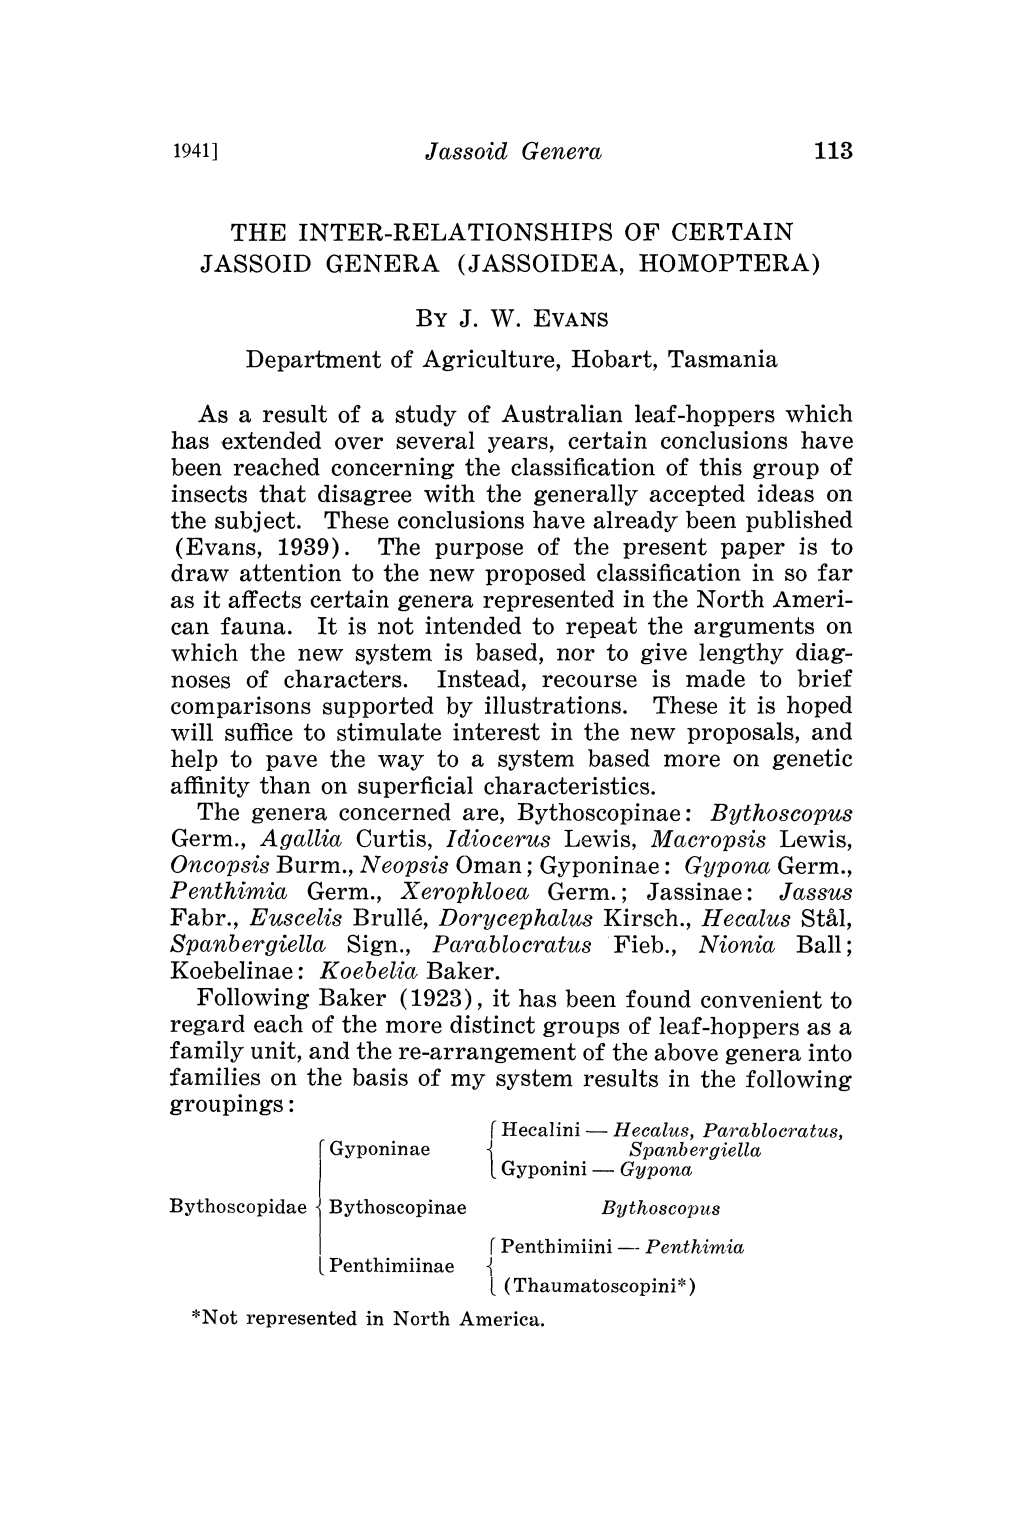 The Inter-Relationshipsof Certain Jassoid Genera (Jassoidea, Homoptera) by J. W.Evans